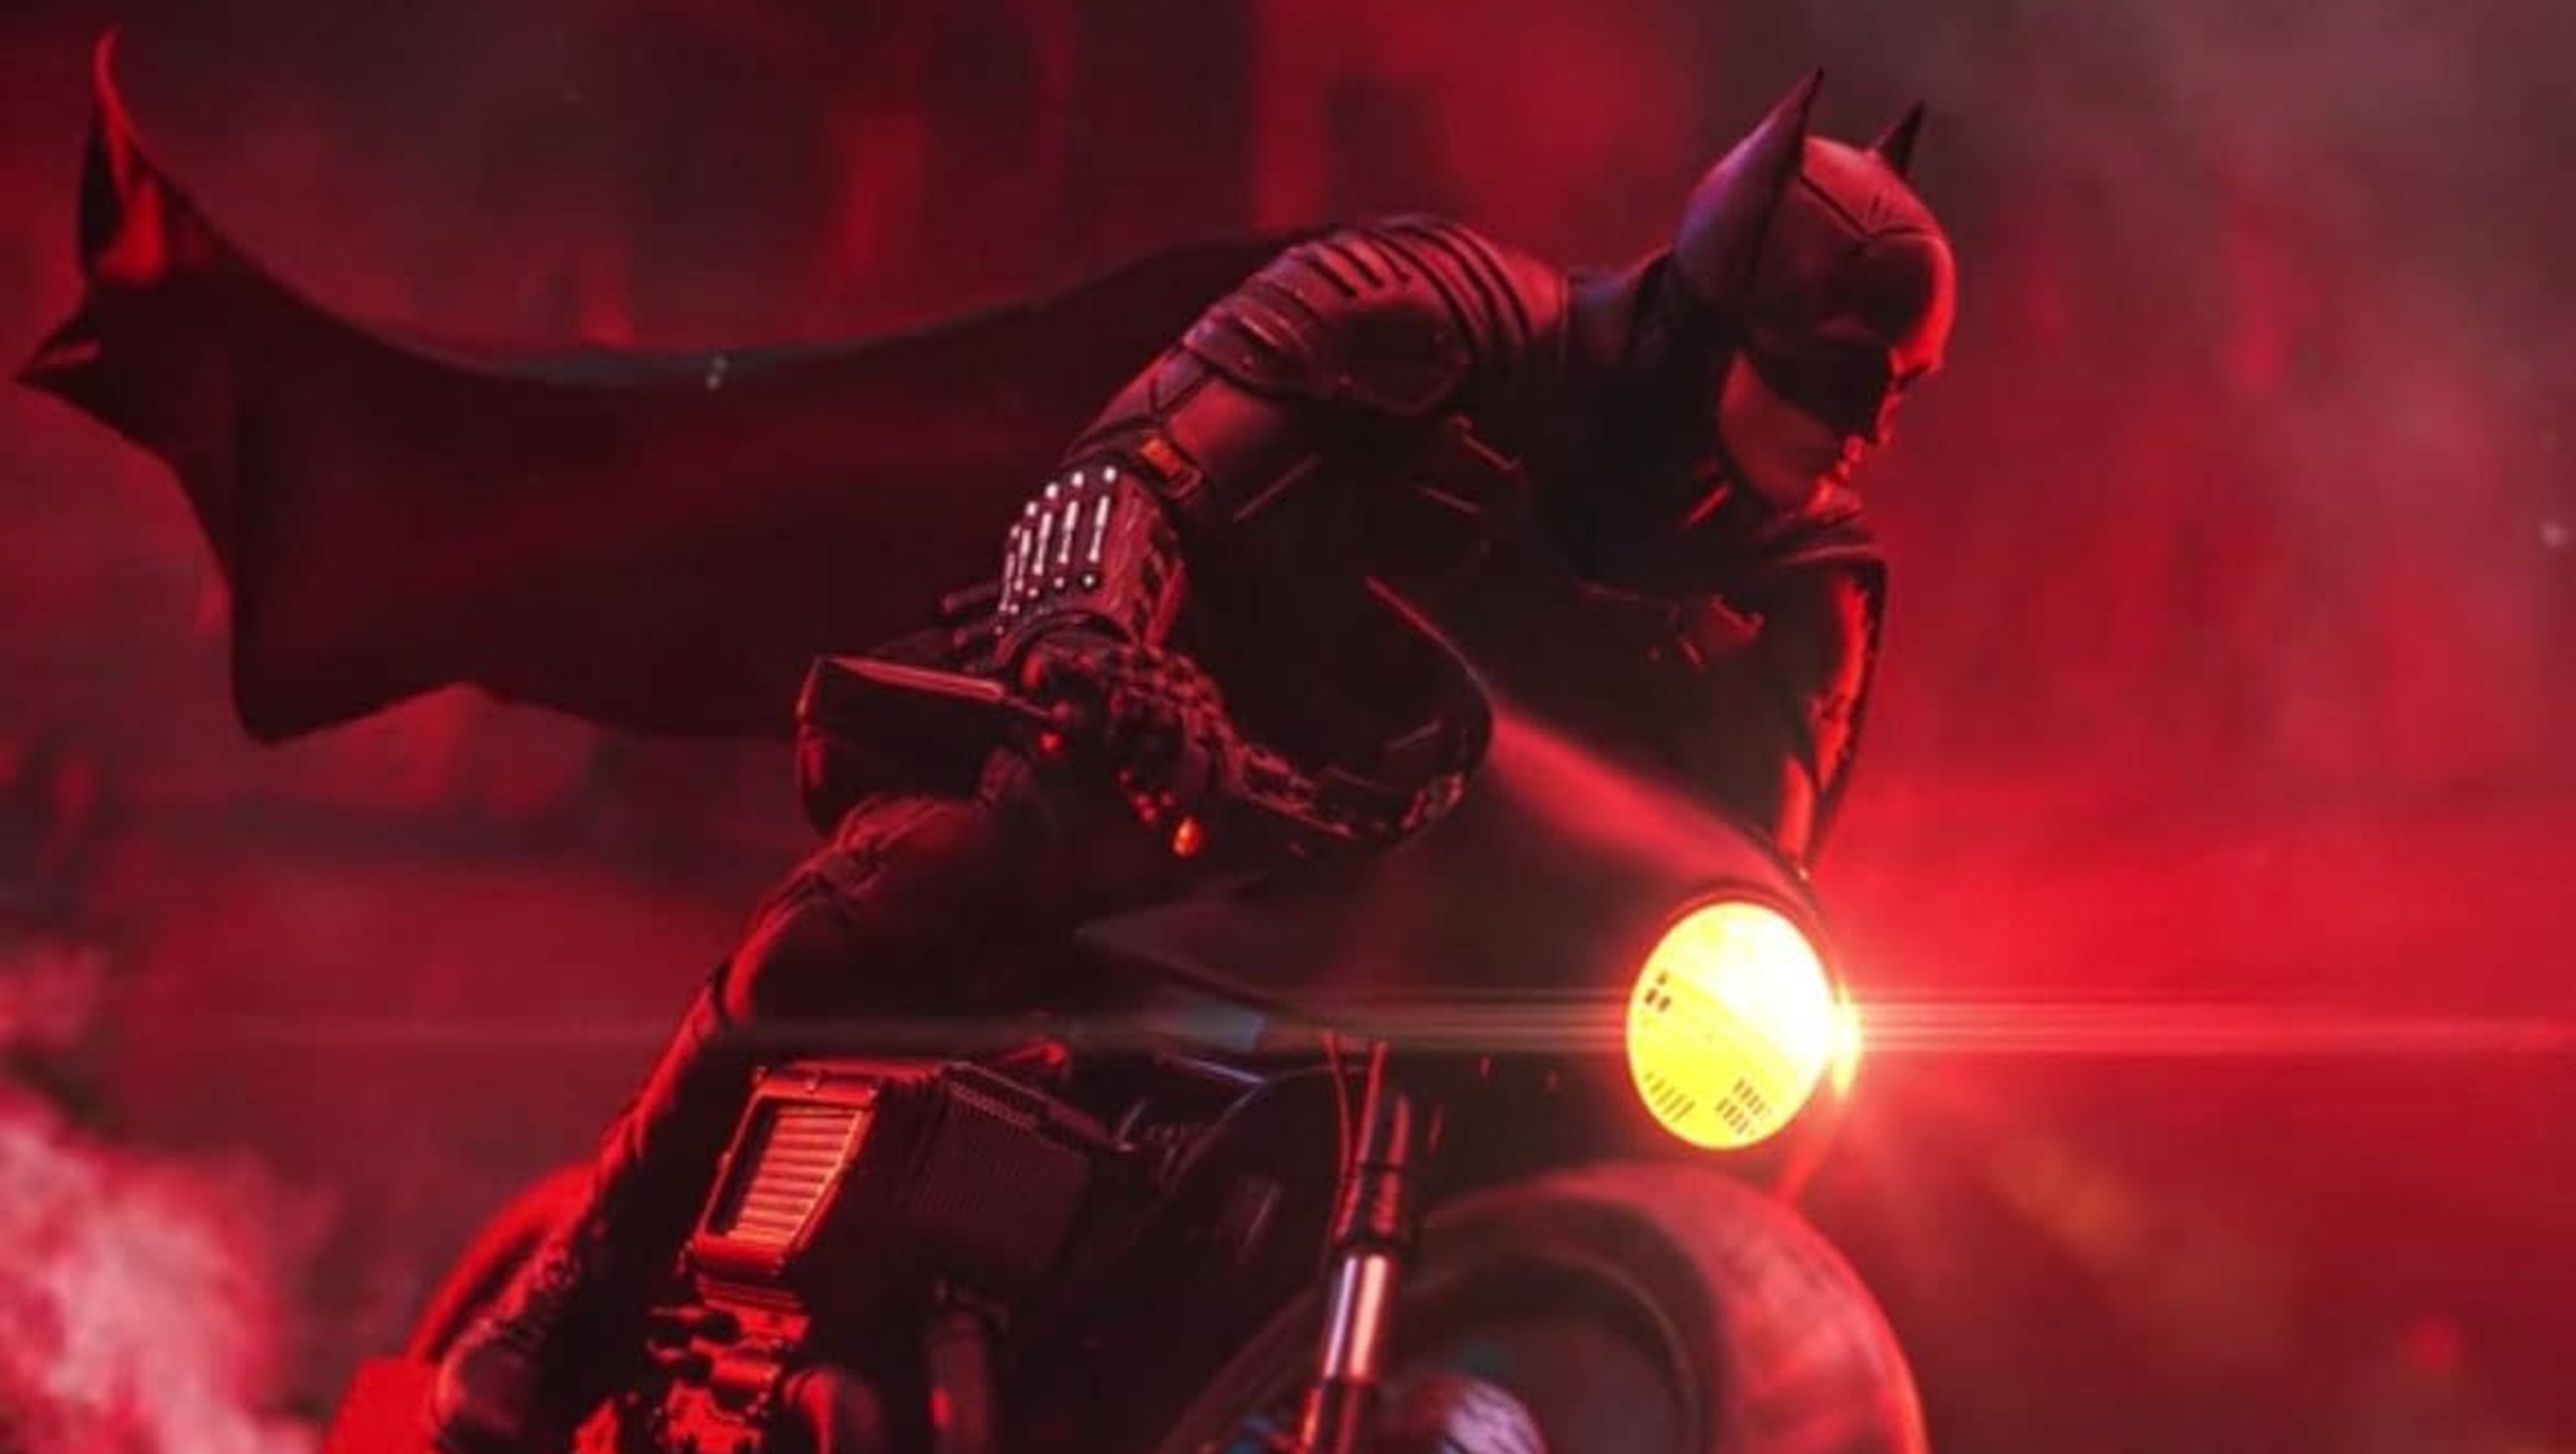 Primer vistazo a la figura de The Batman con el héroe montado en su bat-moto